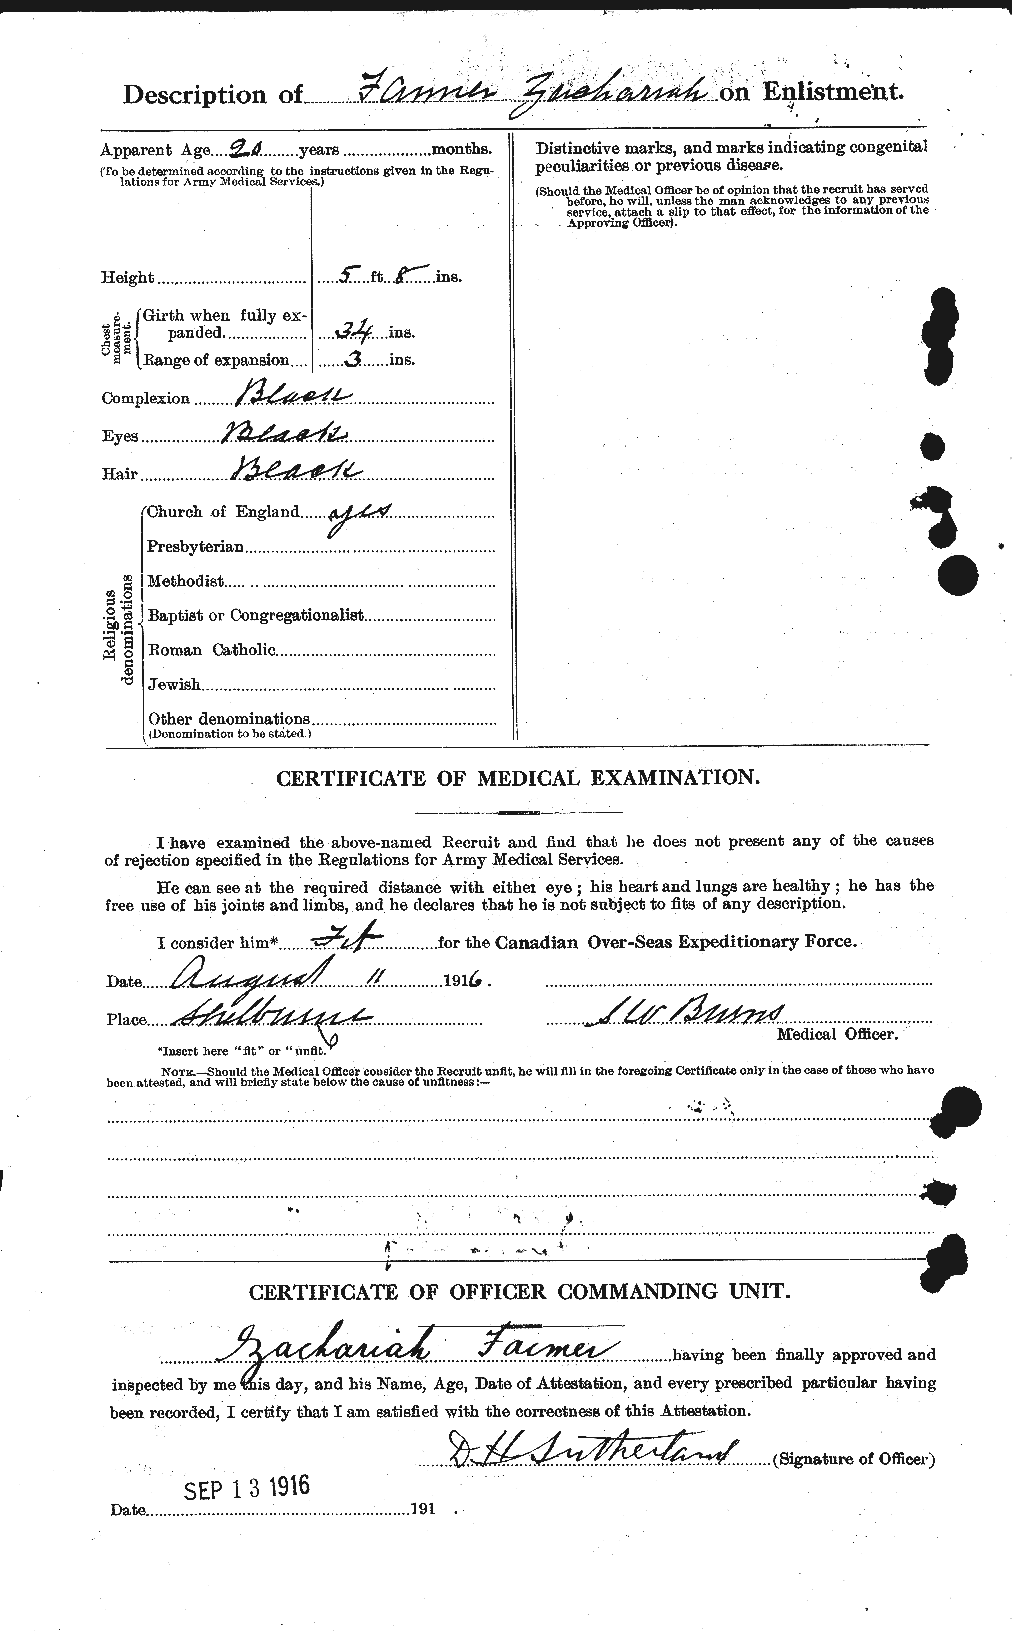 Dossiers du Personnel de la Première Guerre mondiale - CEC 318438b